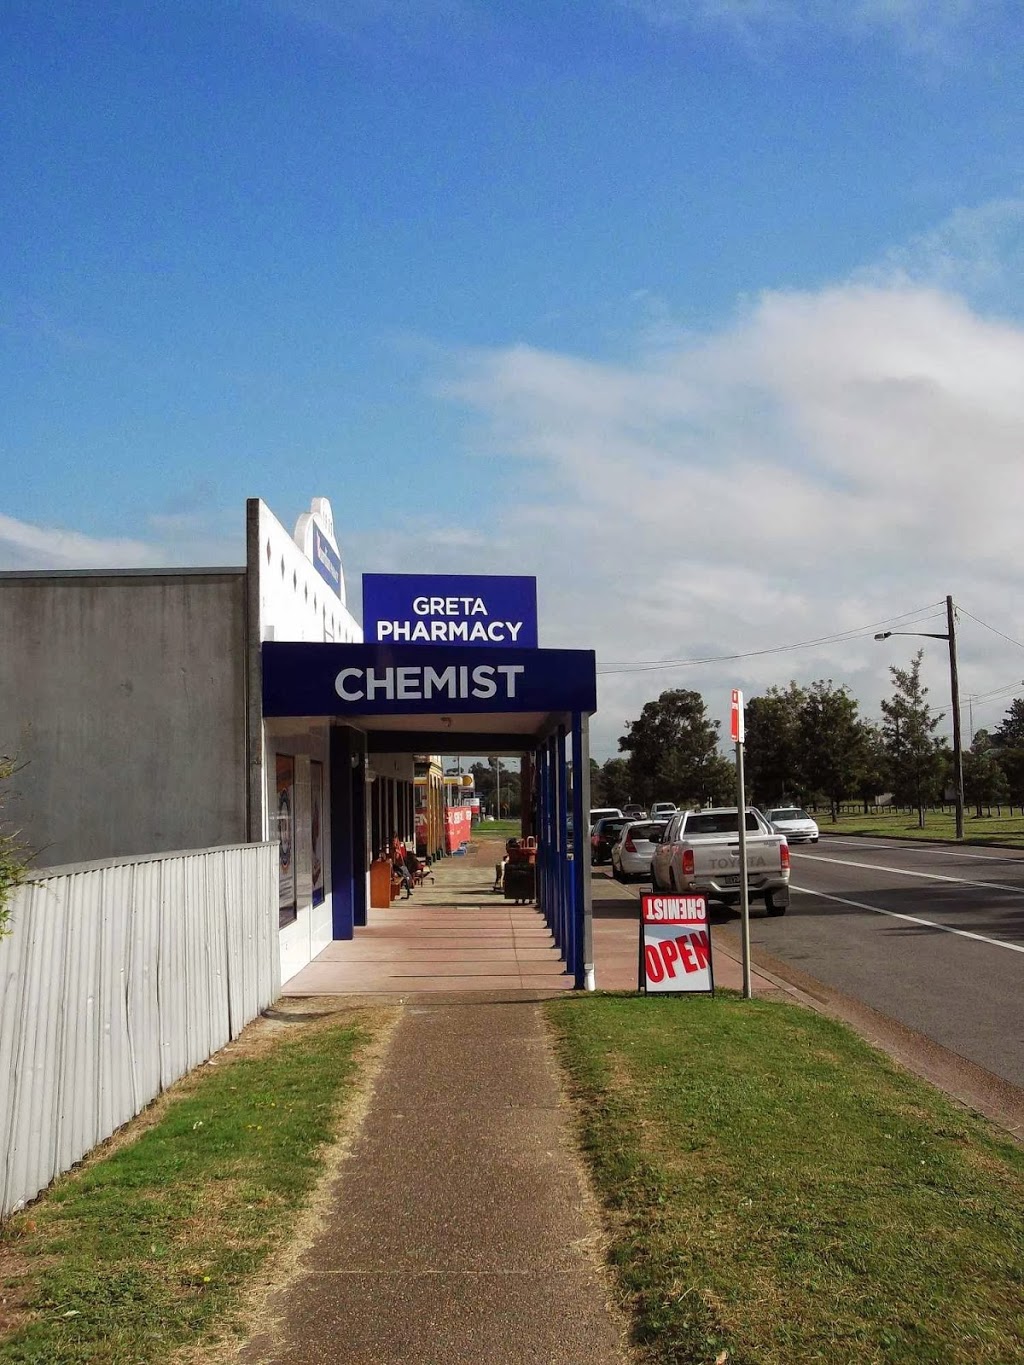 Greta Compounding Pharmacy | pharmacy | 104 High St, Greta NSW 2334, Australia | 0249387030 OR +61 2 4938 7030